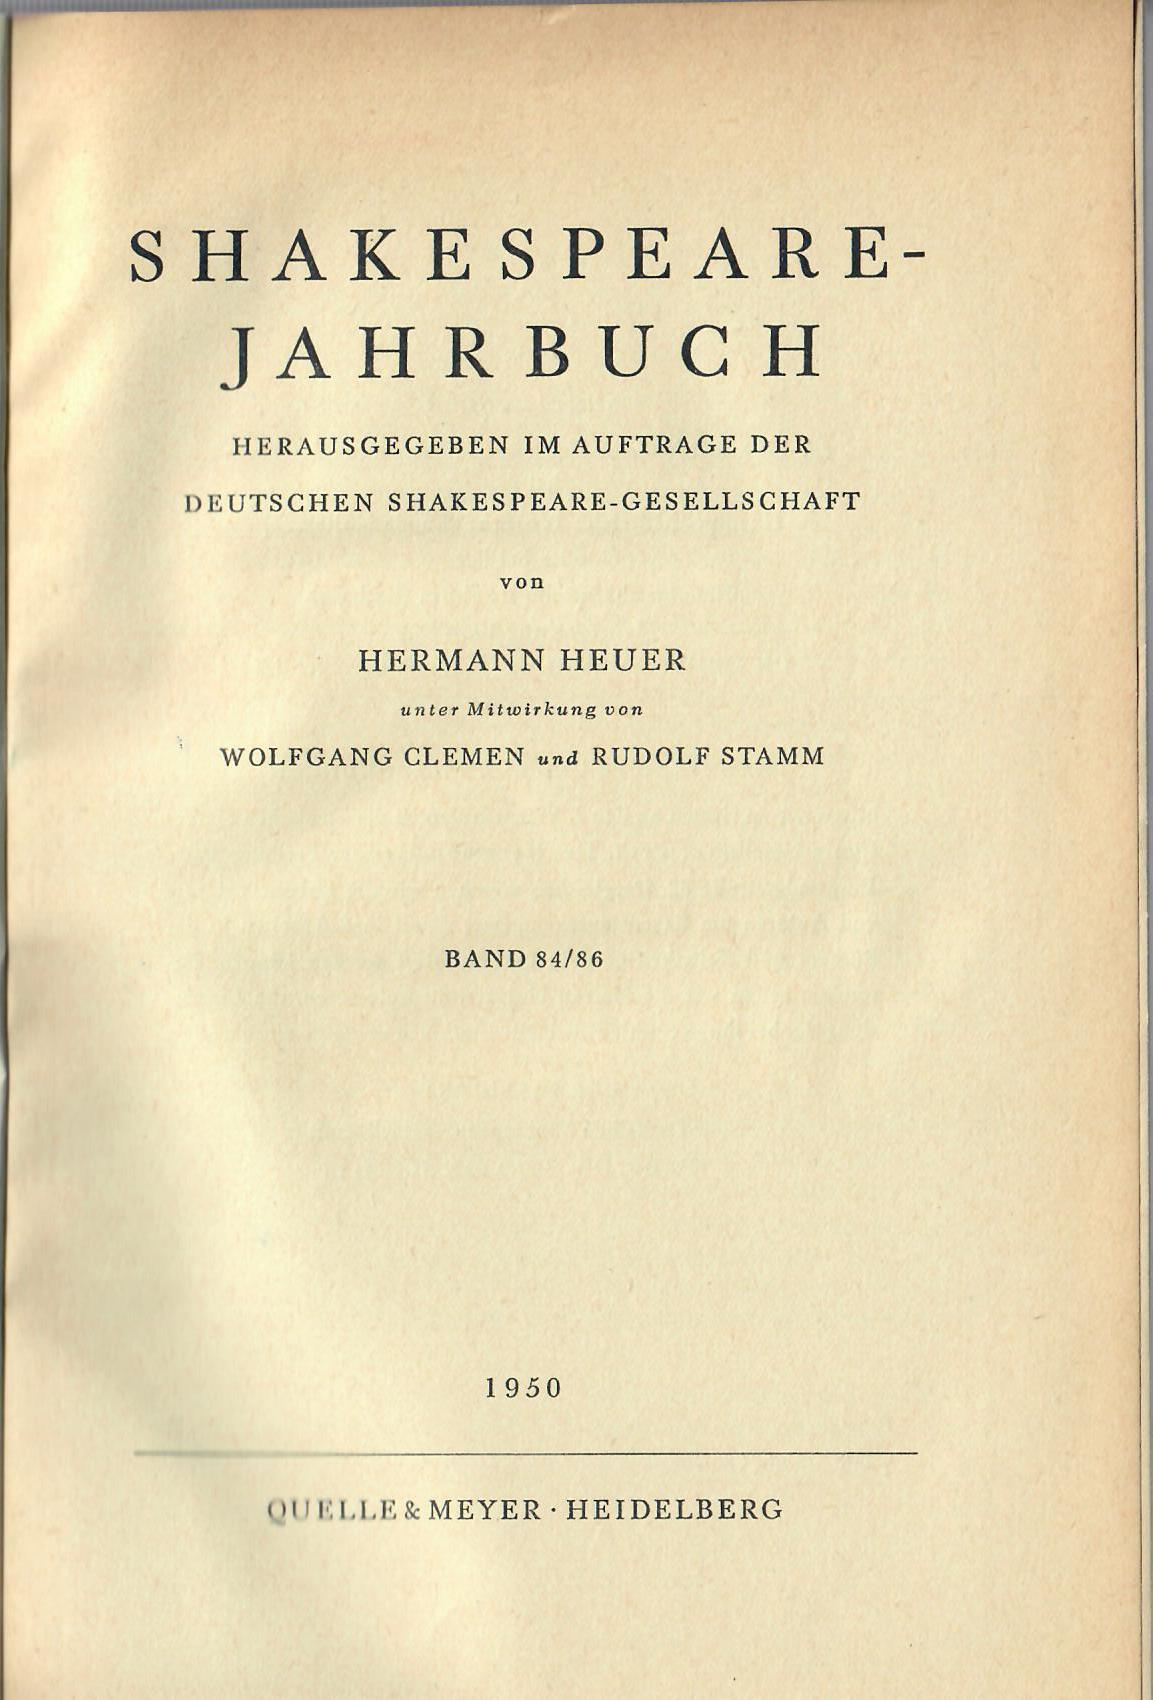 SHAKESPEARE, Jahrbuch   : Deutsche Shakespeare-Gesellschaft . Jahrbuch 1950. Band 84/86.